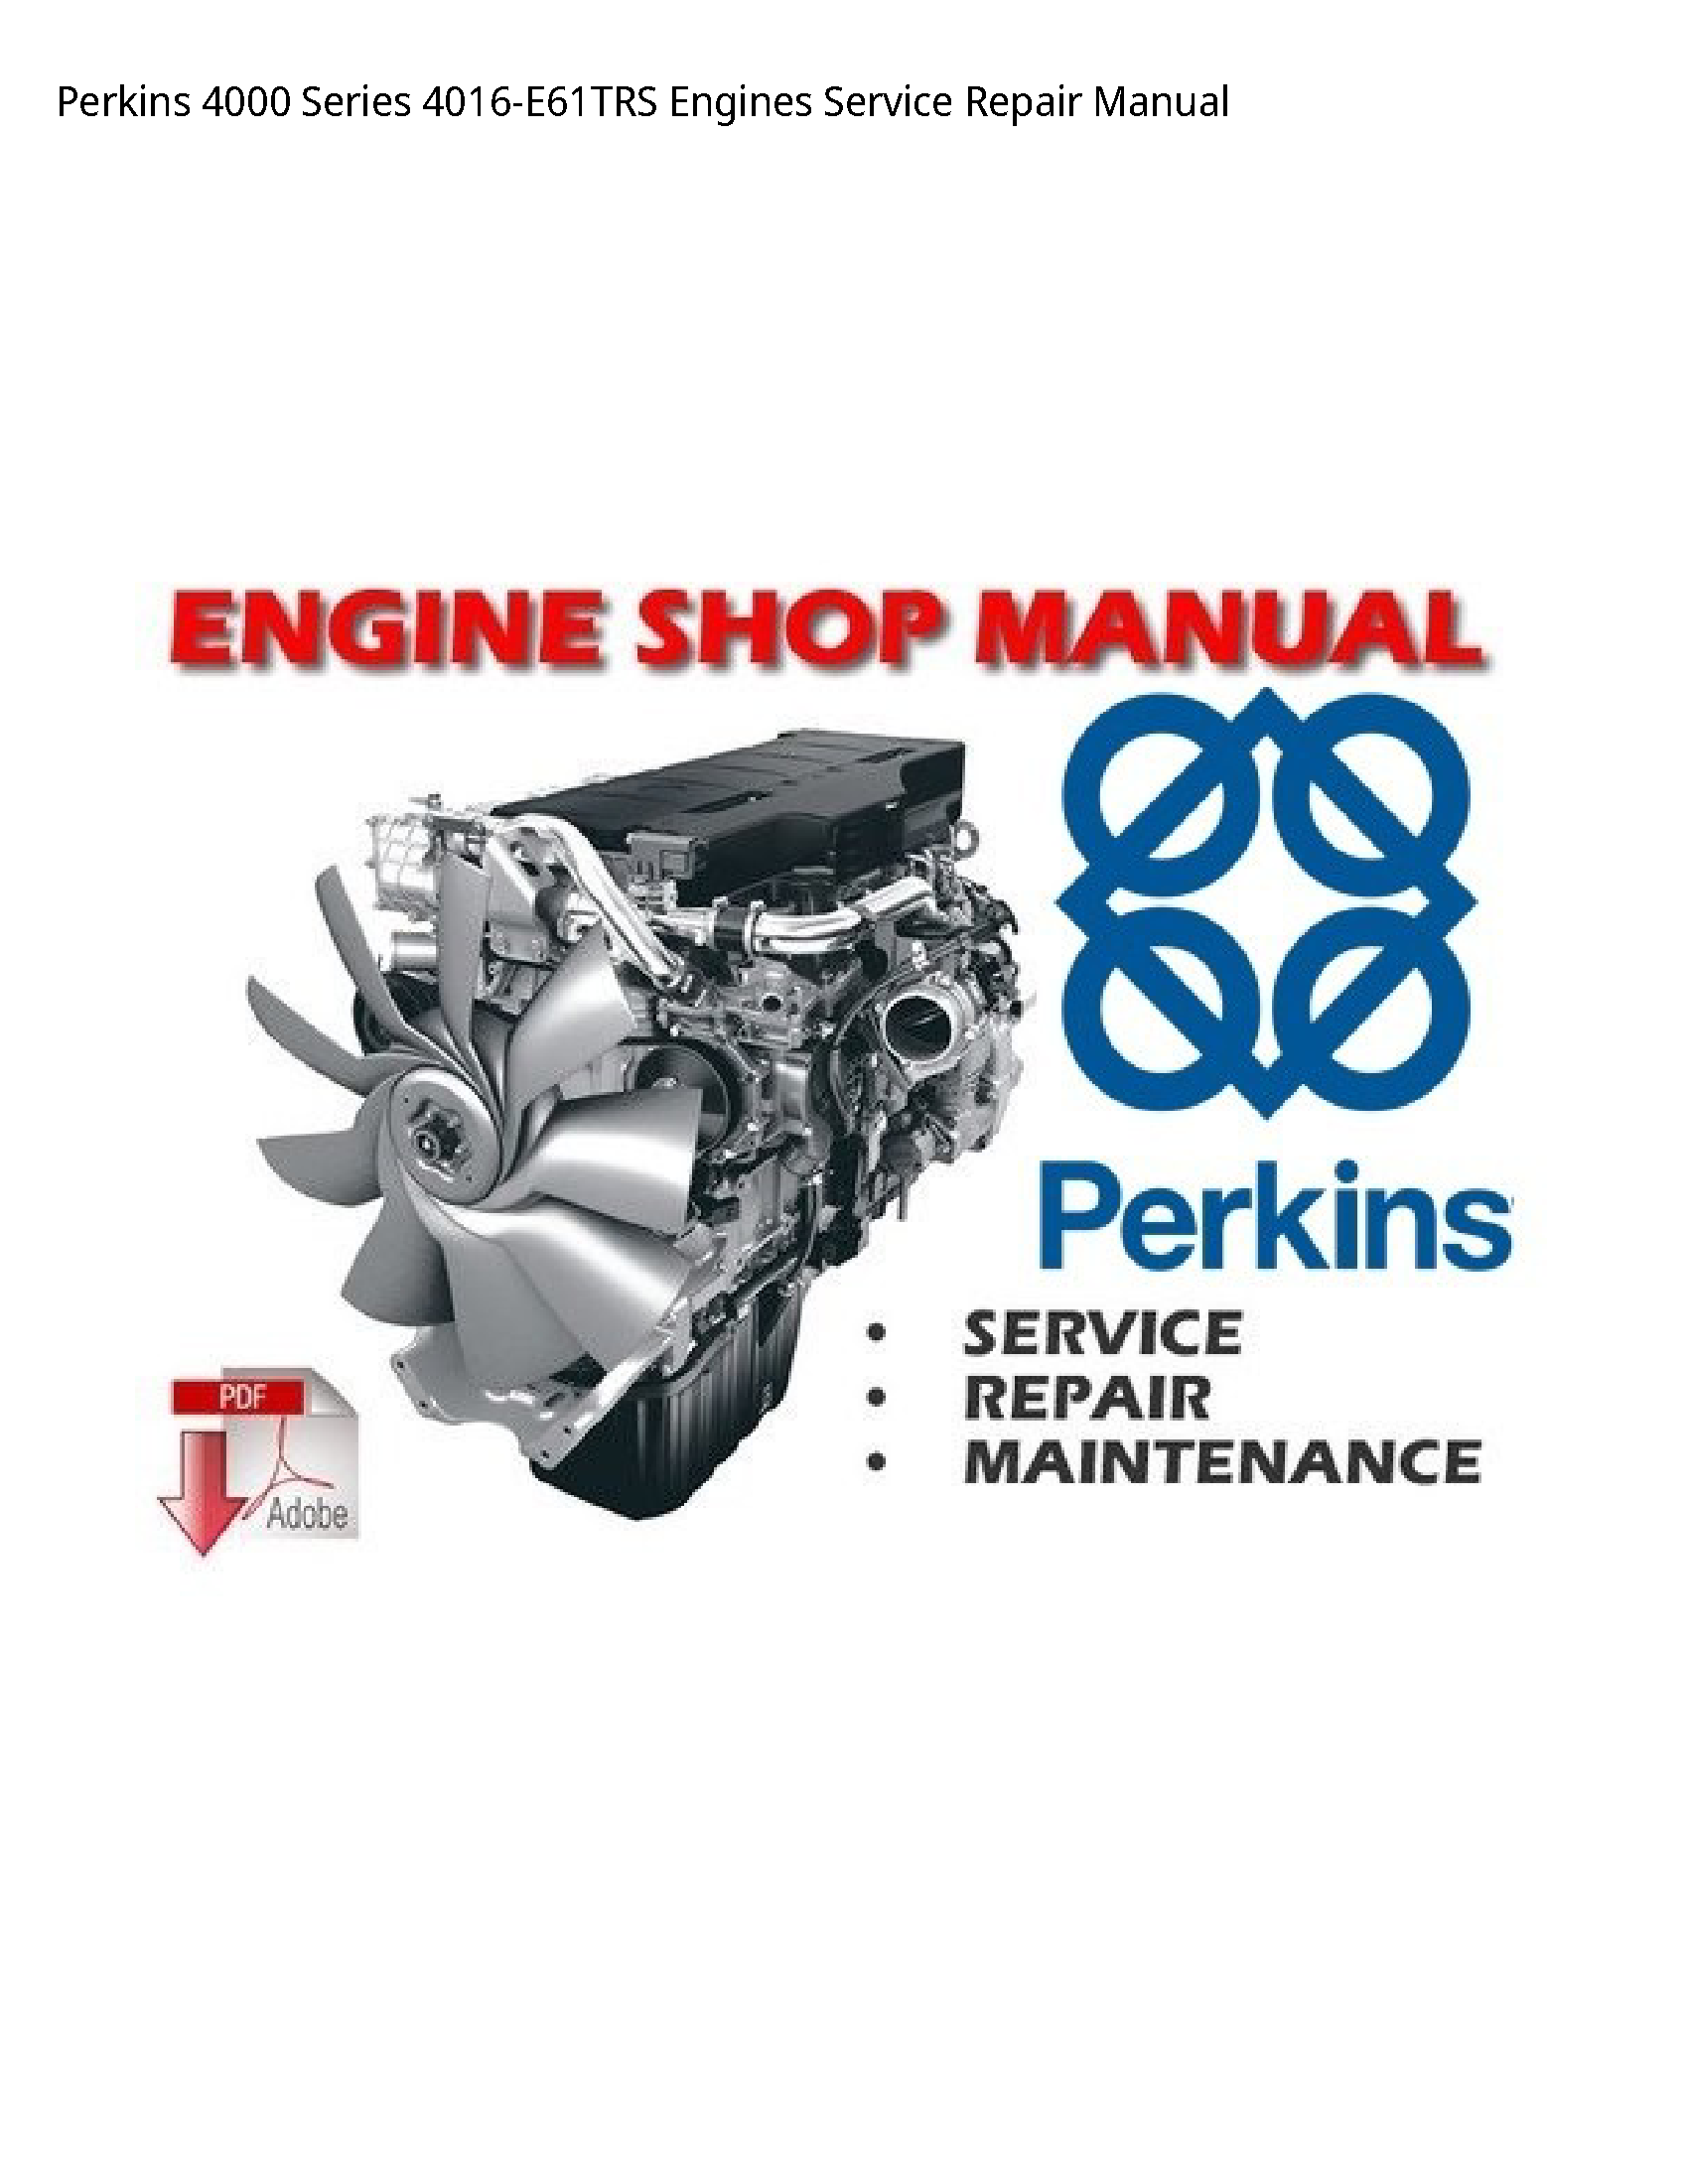 Perkins 4000 Series Engines manual